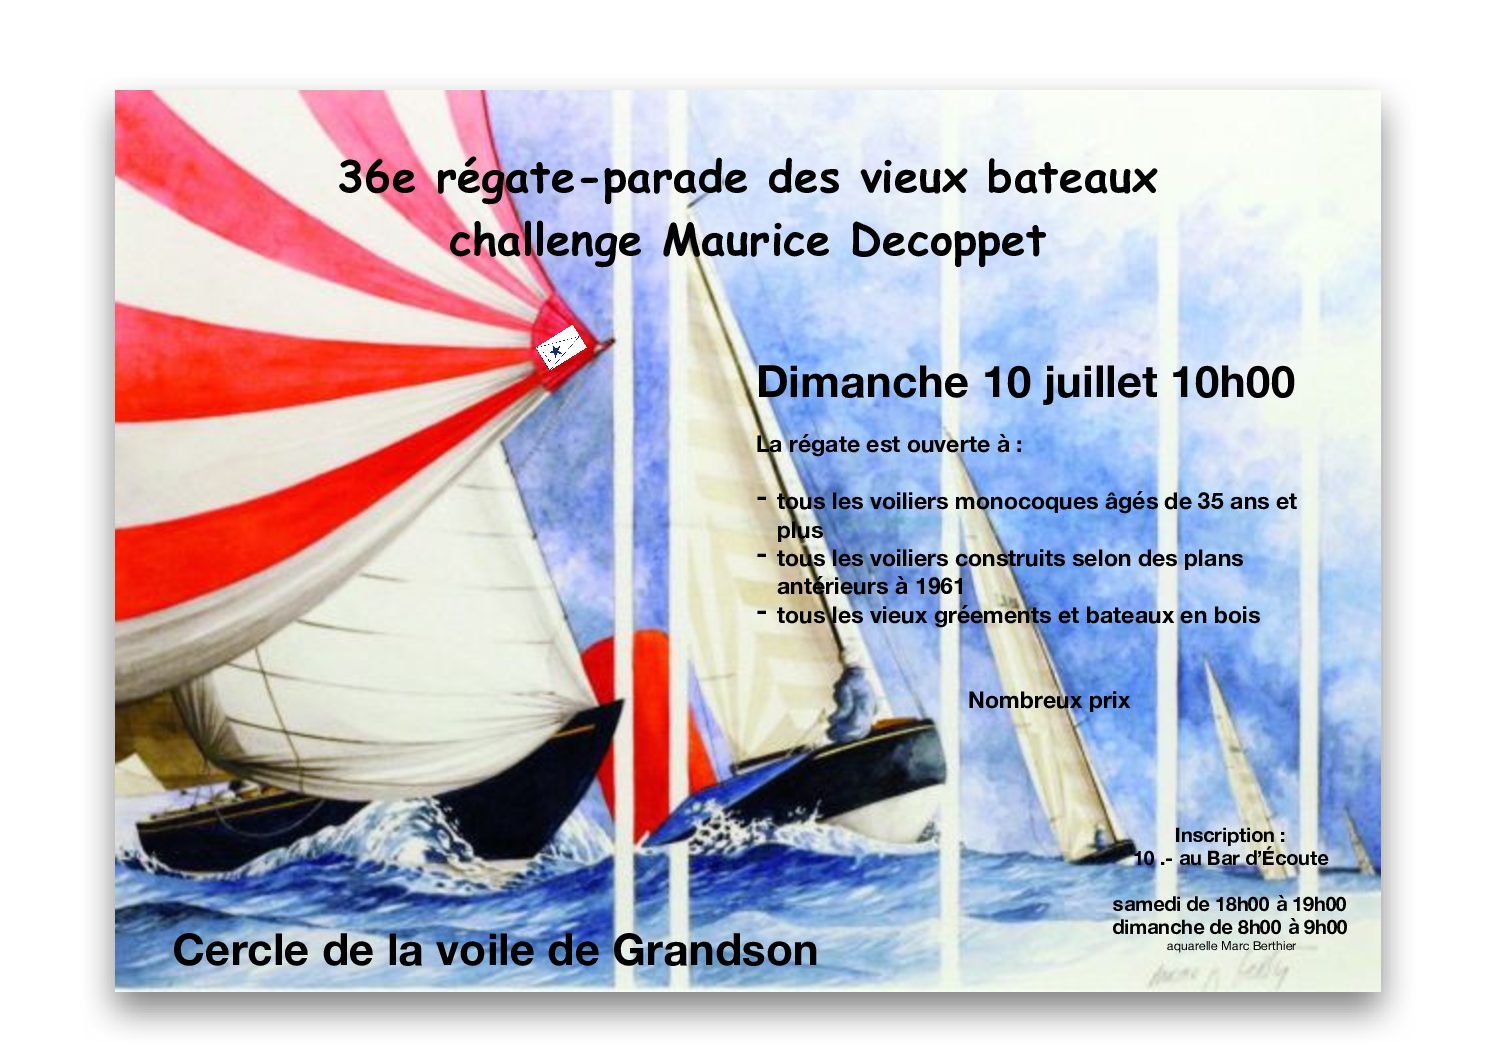 36e régate – parade des vieux bateaux, challenge Maurice Decoppet